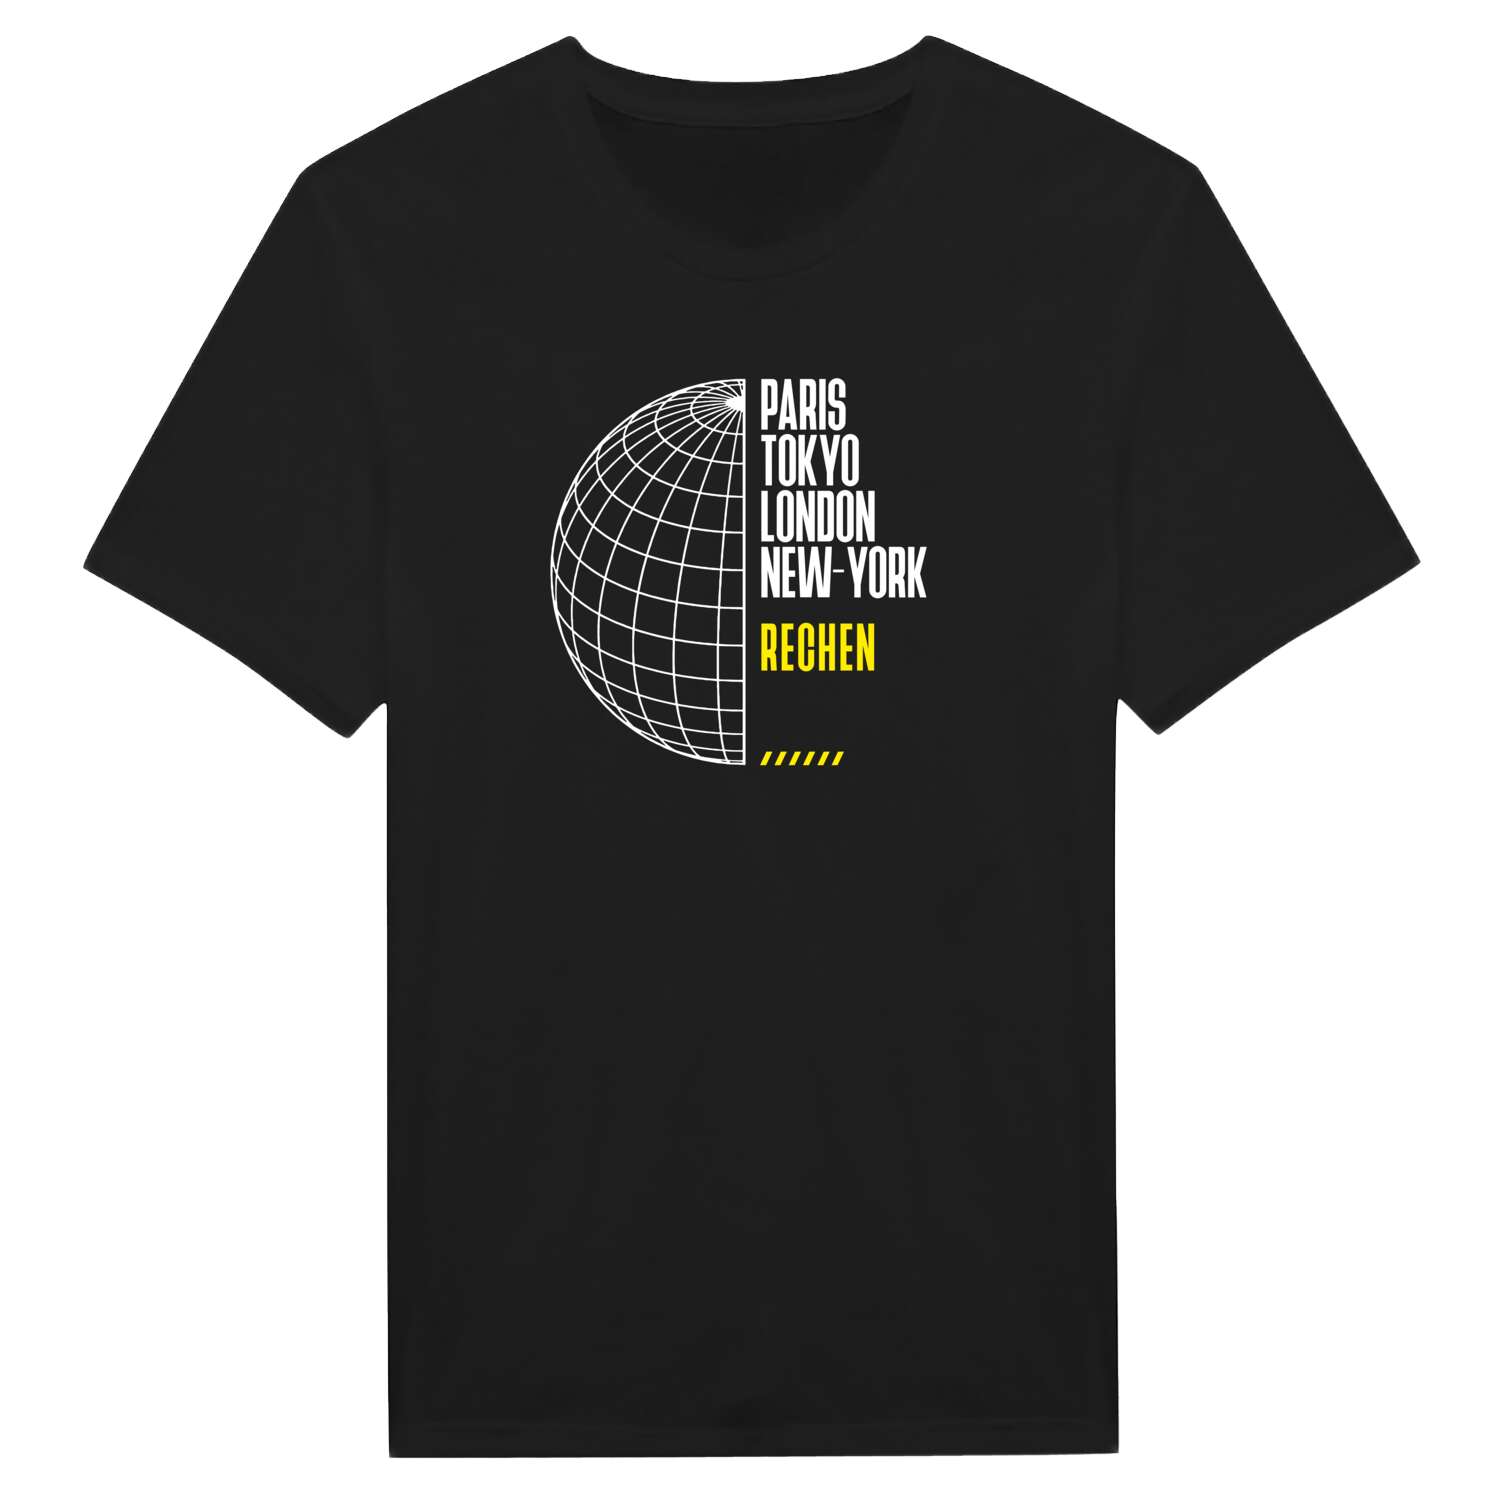 Rechen T-Shirt »Paris Tokyo London«